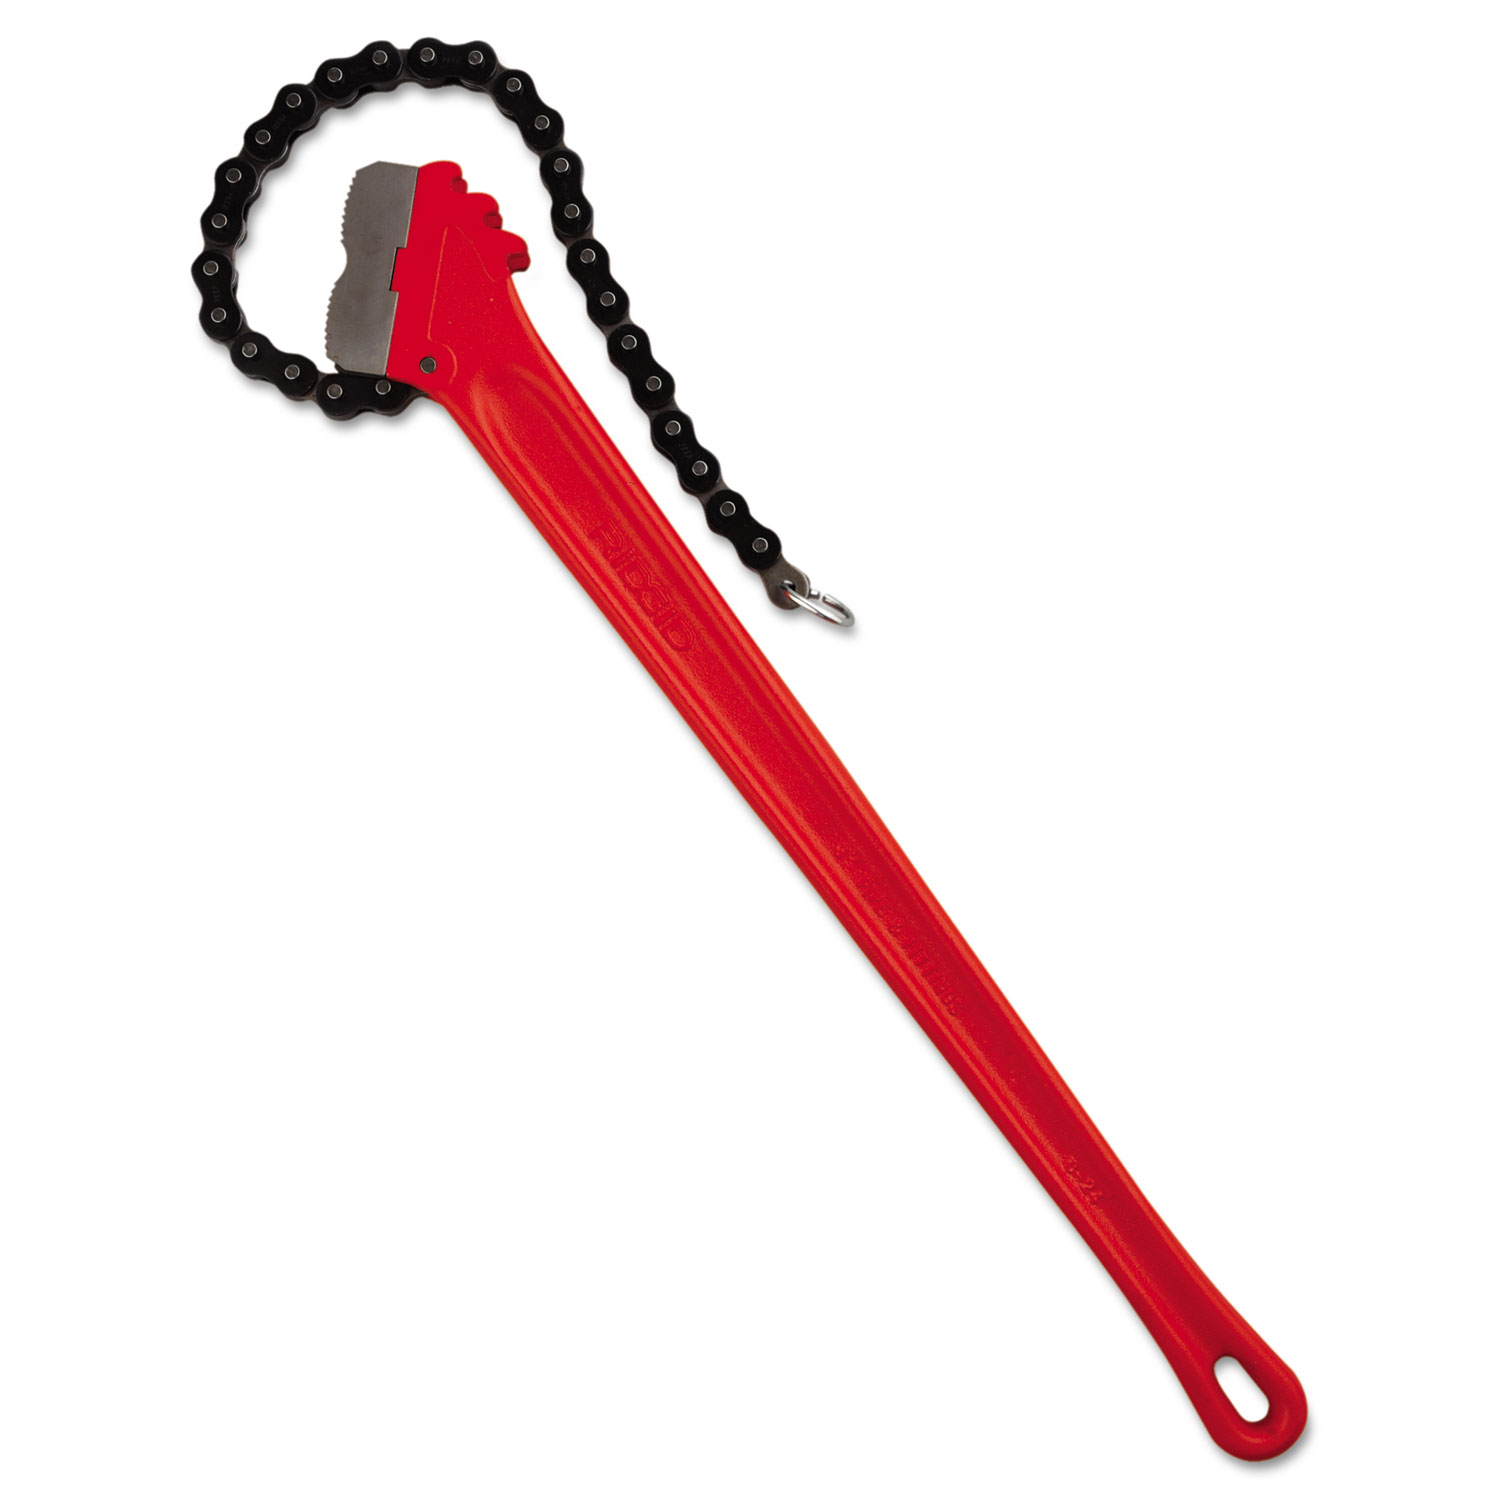 RIDGID Chain Wrench, 20 1/4 Chain, 3-5 Capacity